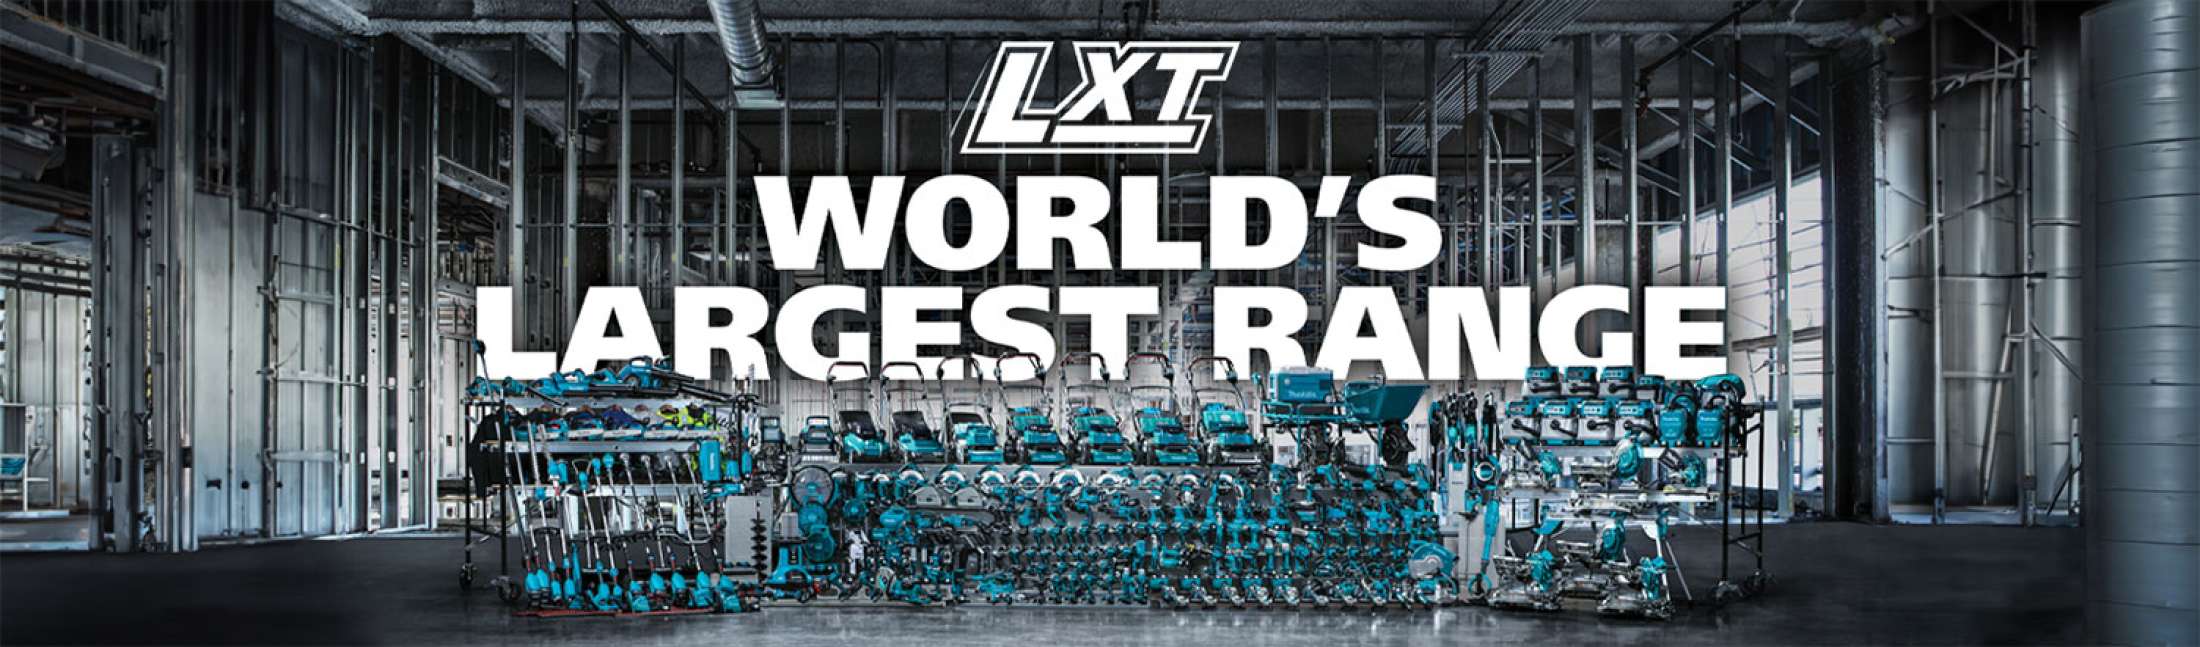 LXT World's Largest Range